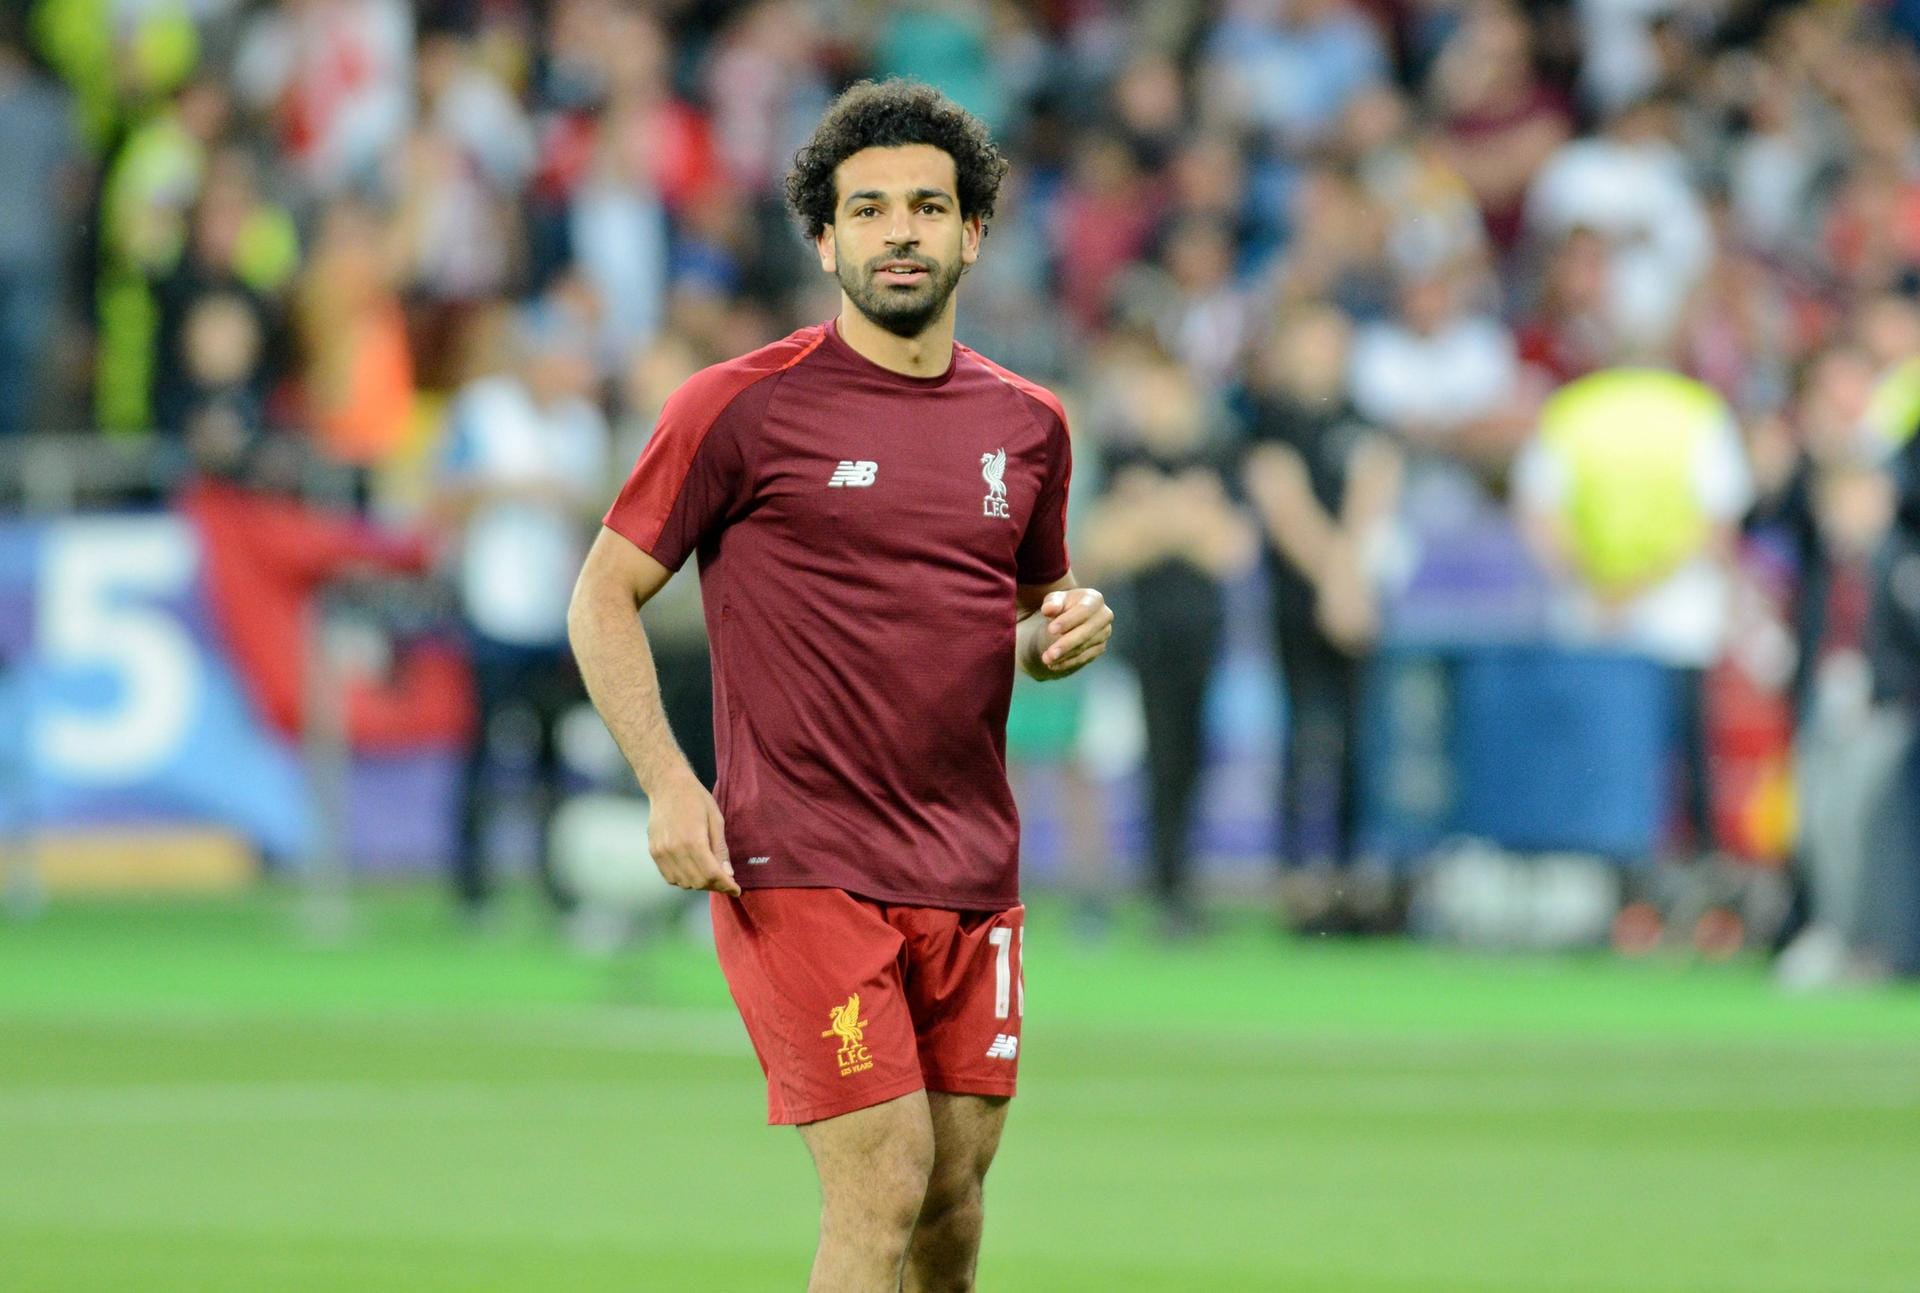 Mohamed Salah (Ägypten): Der 25-Jährige ist Star der Gruppe A und erzielte in der WM-Qualifikation fünf von acht Toren der Ägypter. Salah ist inzwischen eine fixe Größe im Offensivbereich des FC Liverpool unter Trainer Jürgen Klopp.